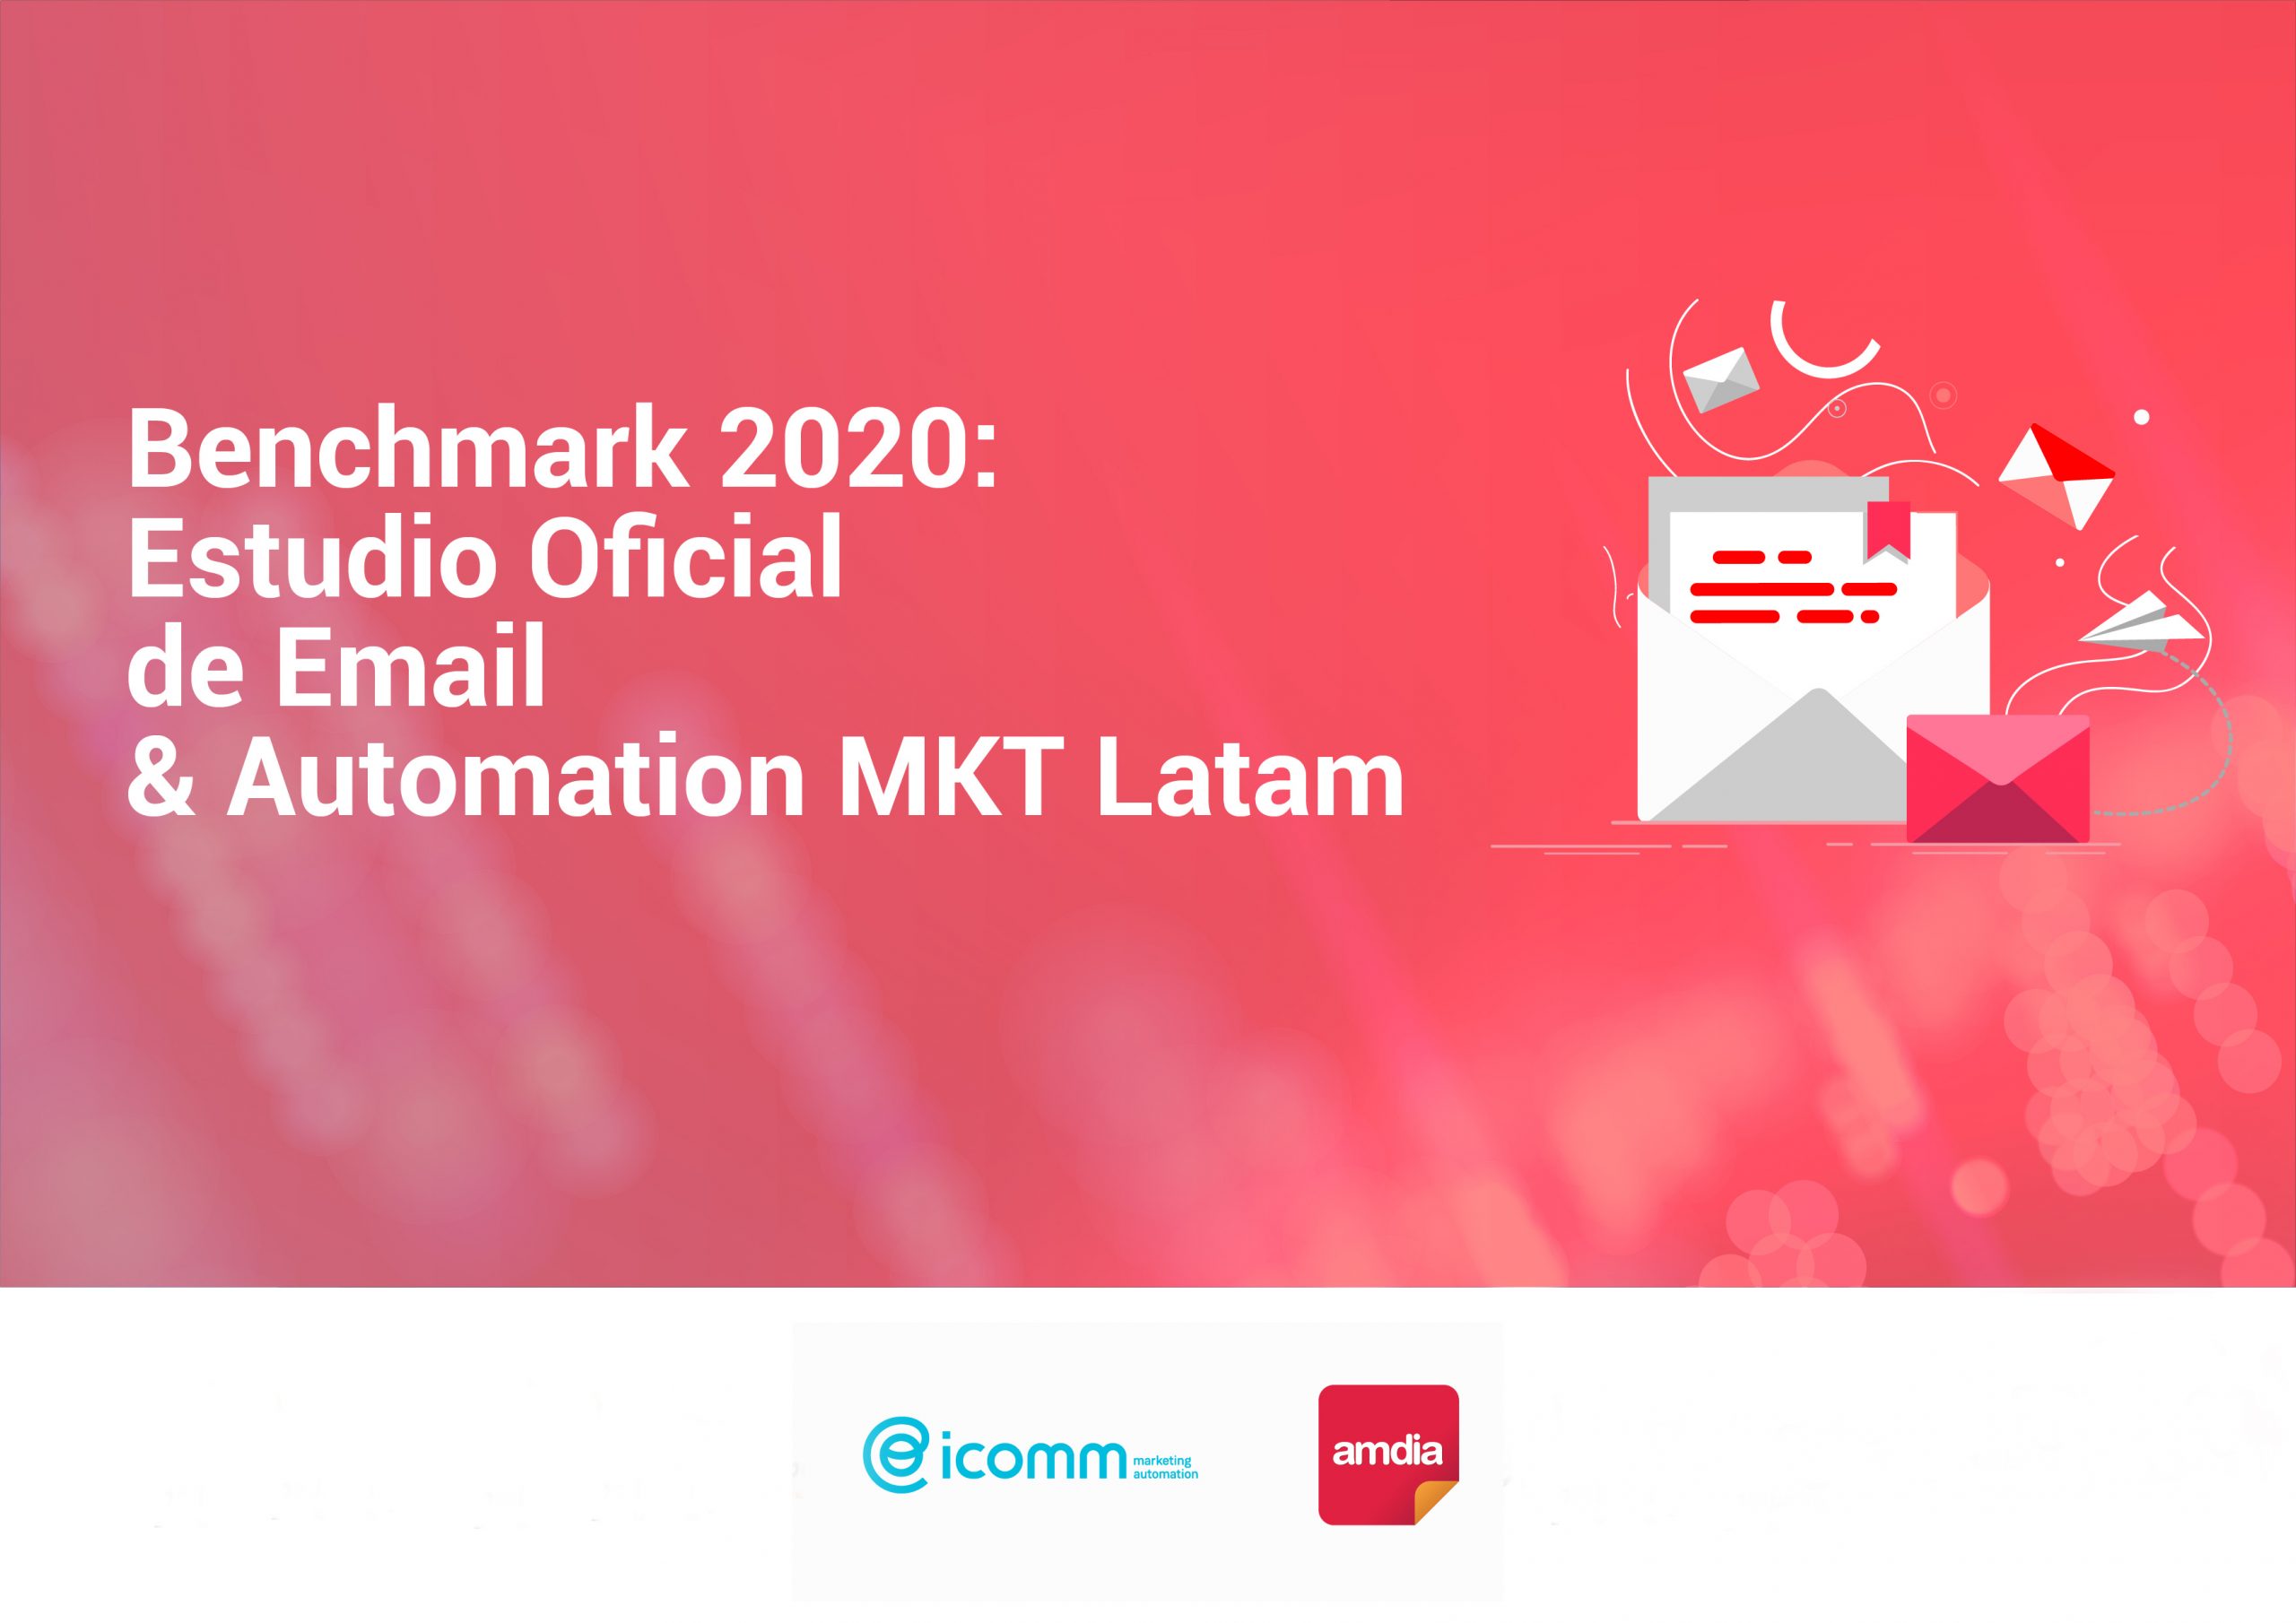 Benchmark ICOMM & AMDIA 2020